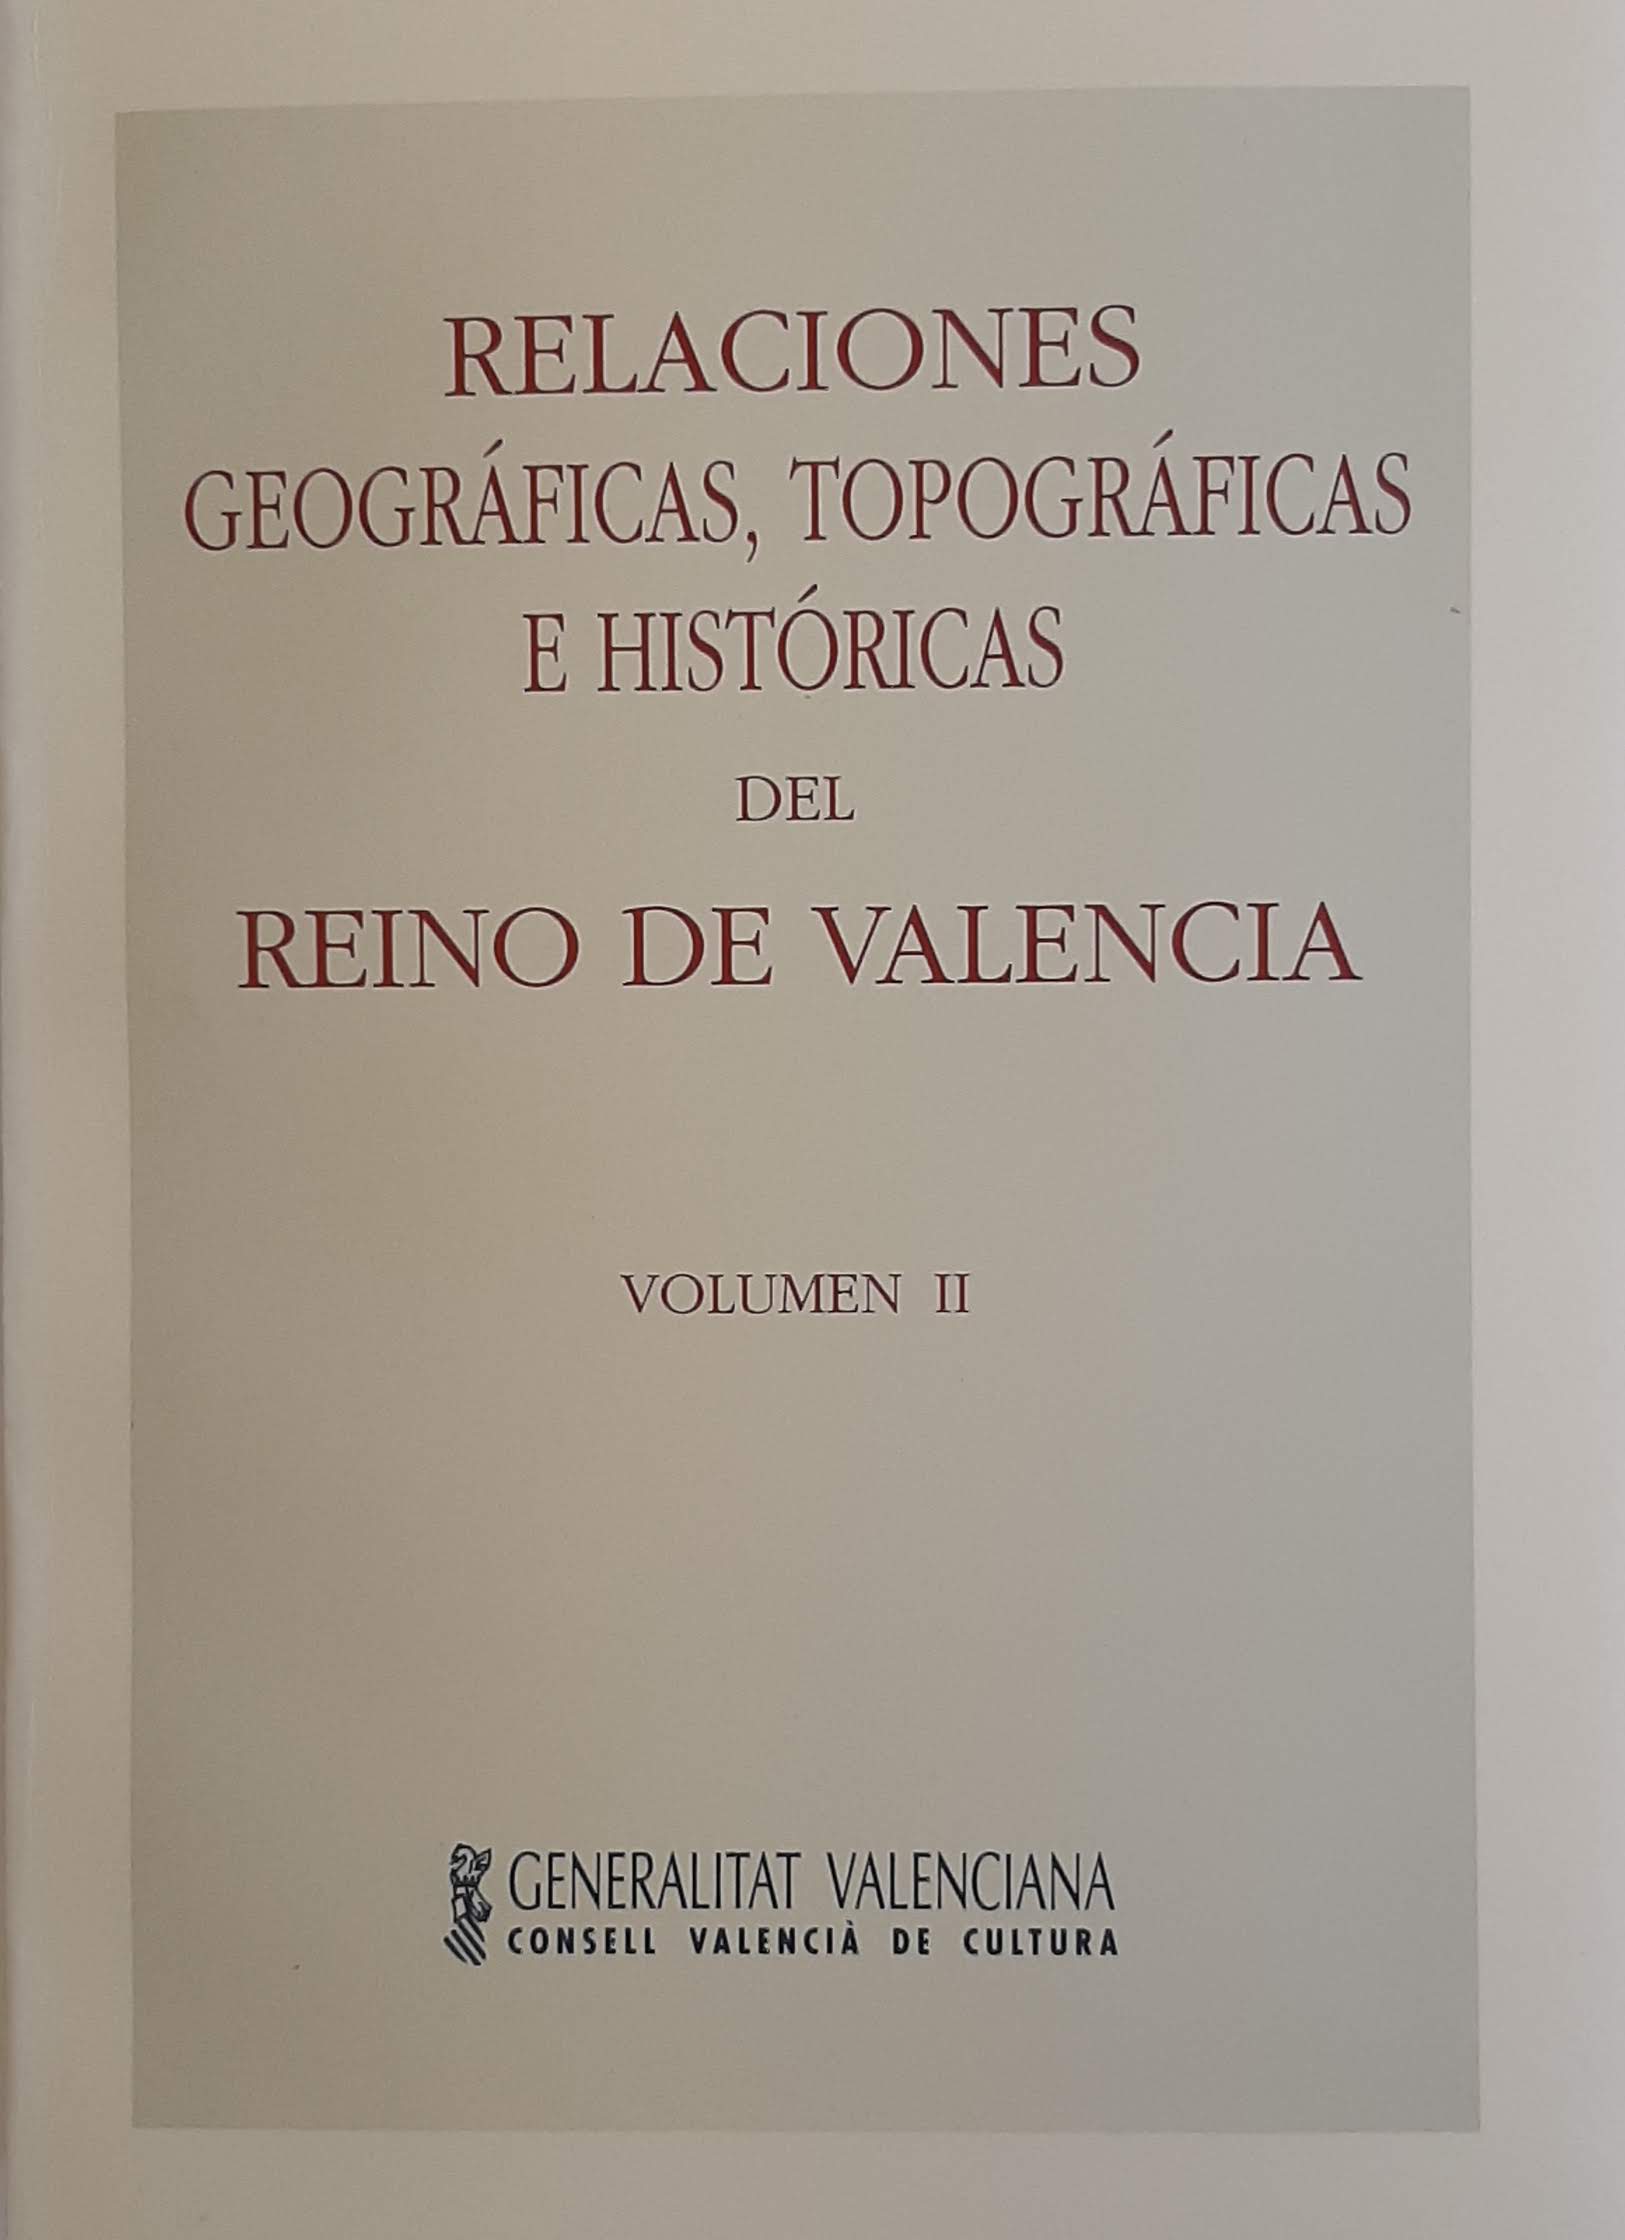 Relaciones geográficas, topográficas e históricas del Reino de Valencia. Volumen II